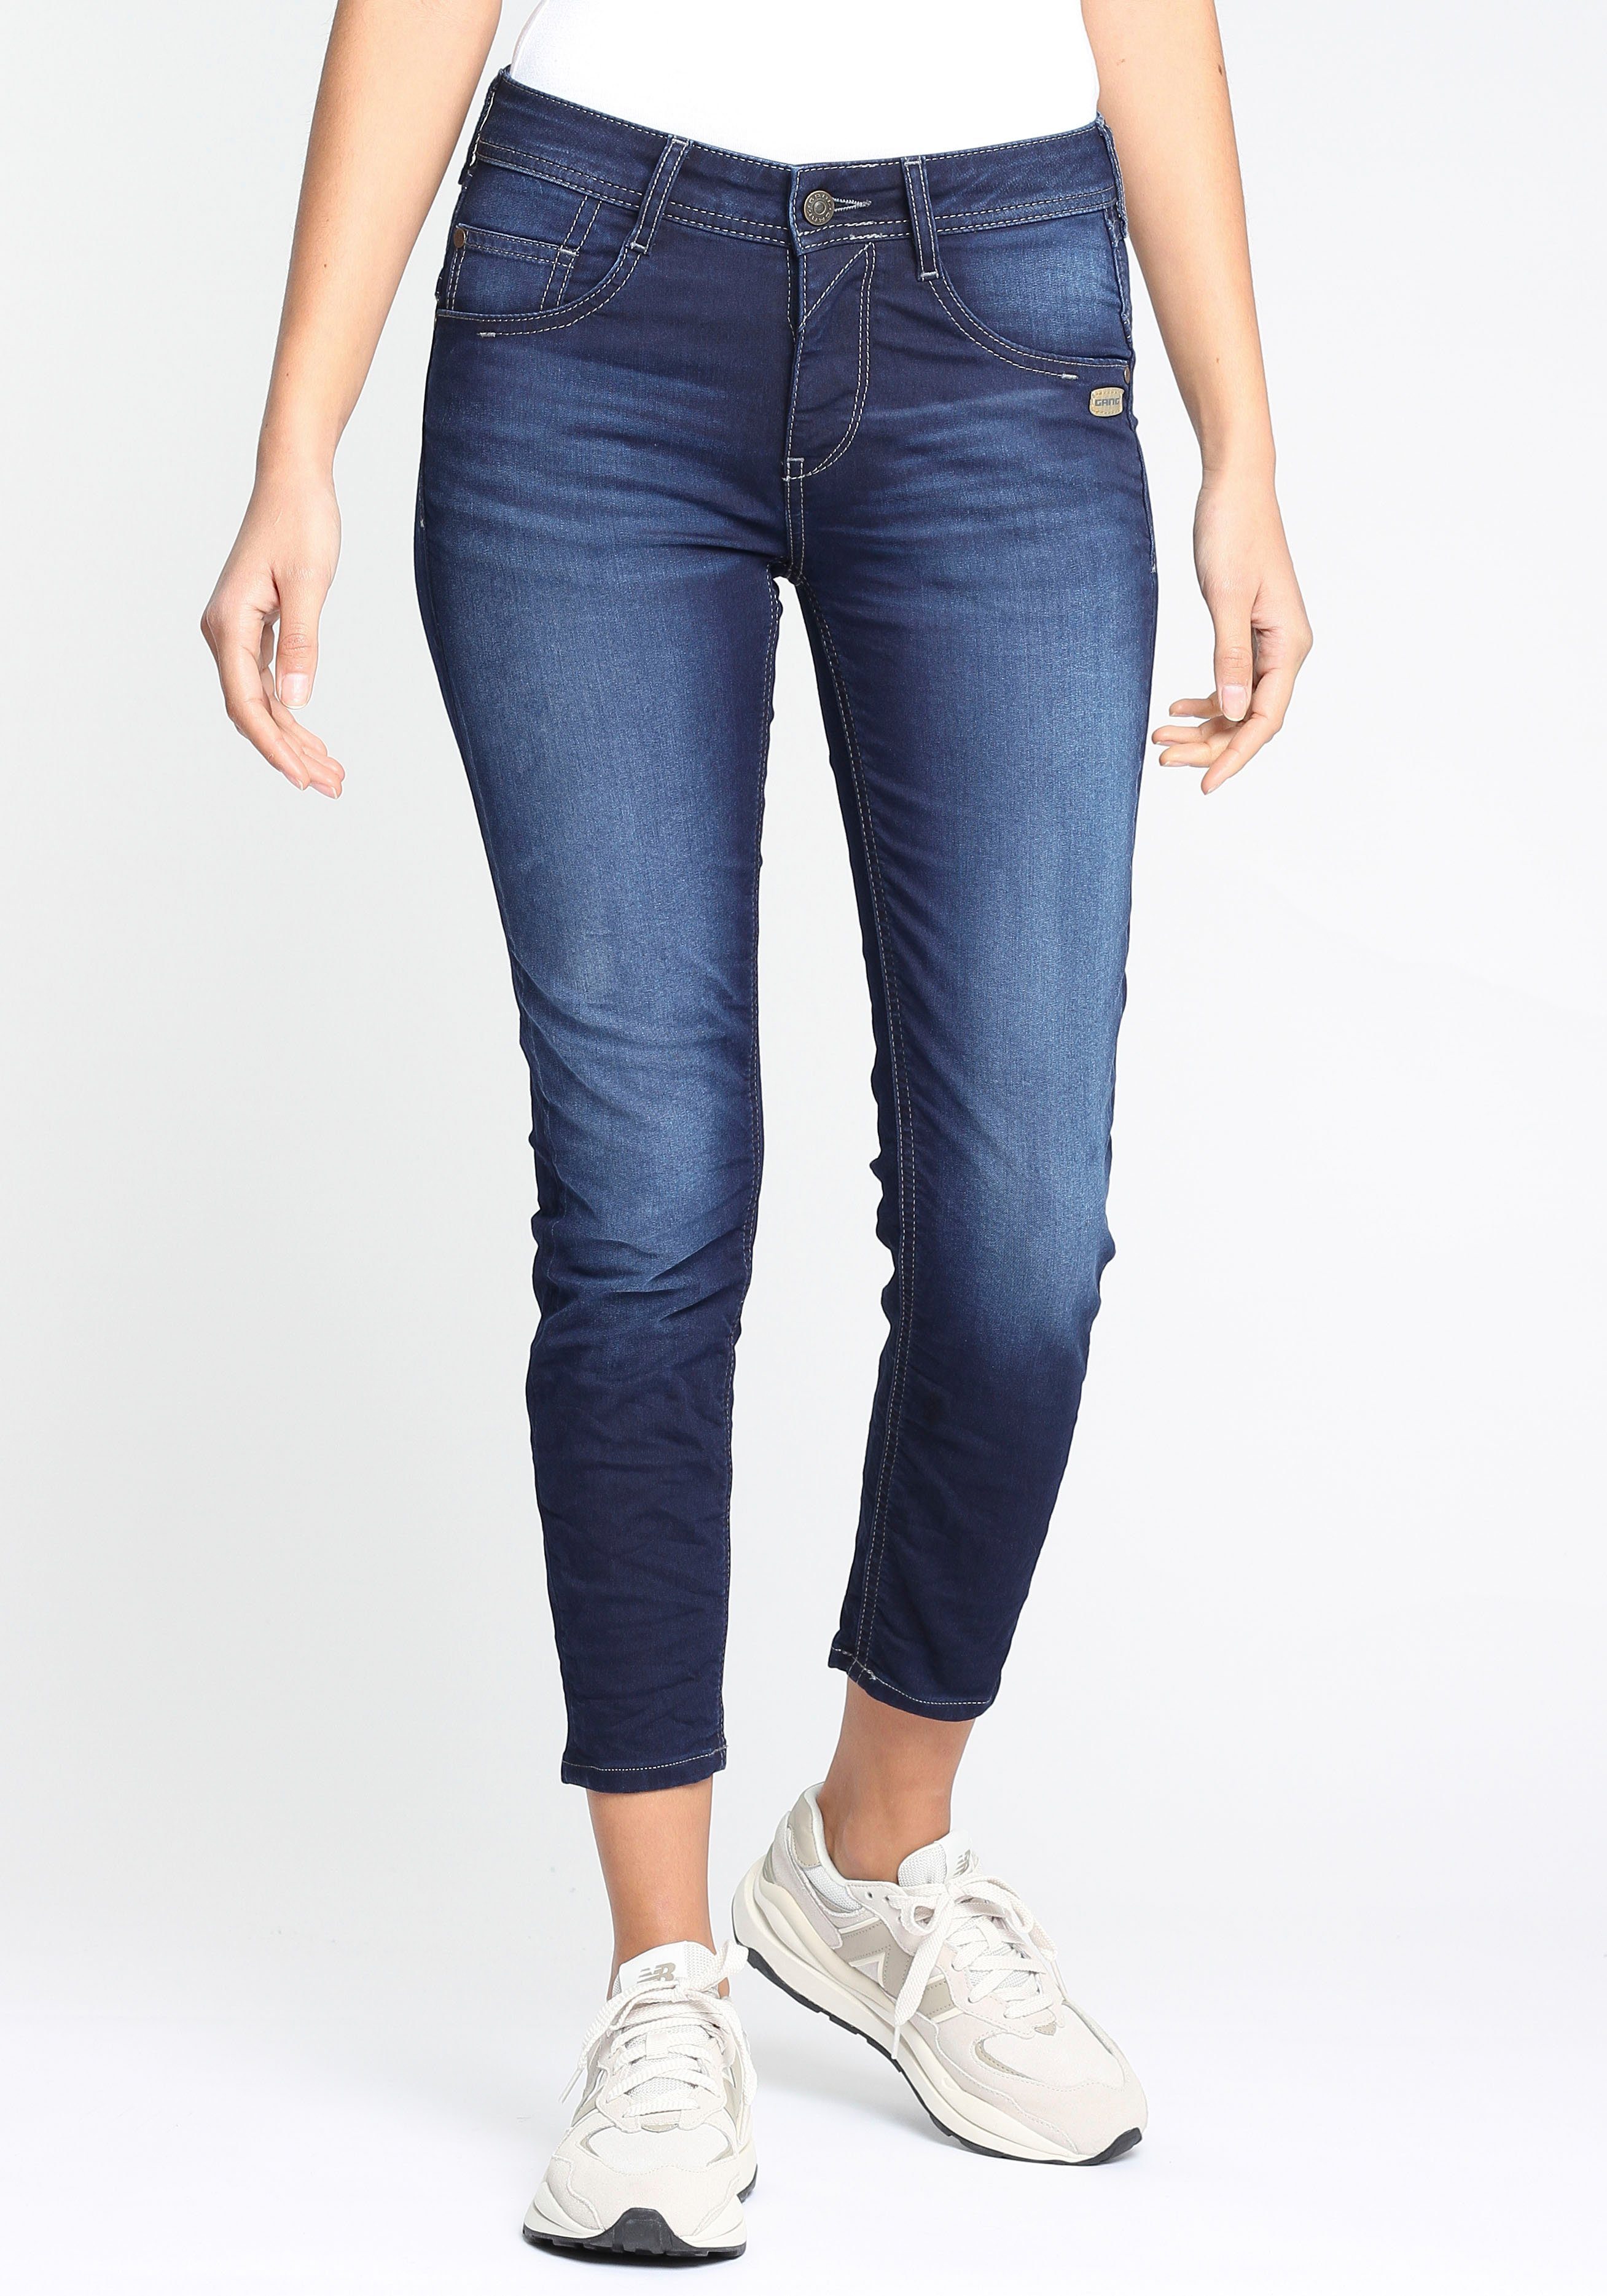 normalen sonst Relax-fit-Jeans mit kleiner eine Fit Relaxed Stretch Fit Nummer 94AMELIE bestellen, für Für Tragekomfort, CROPPED hohen GANG